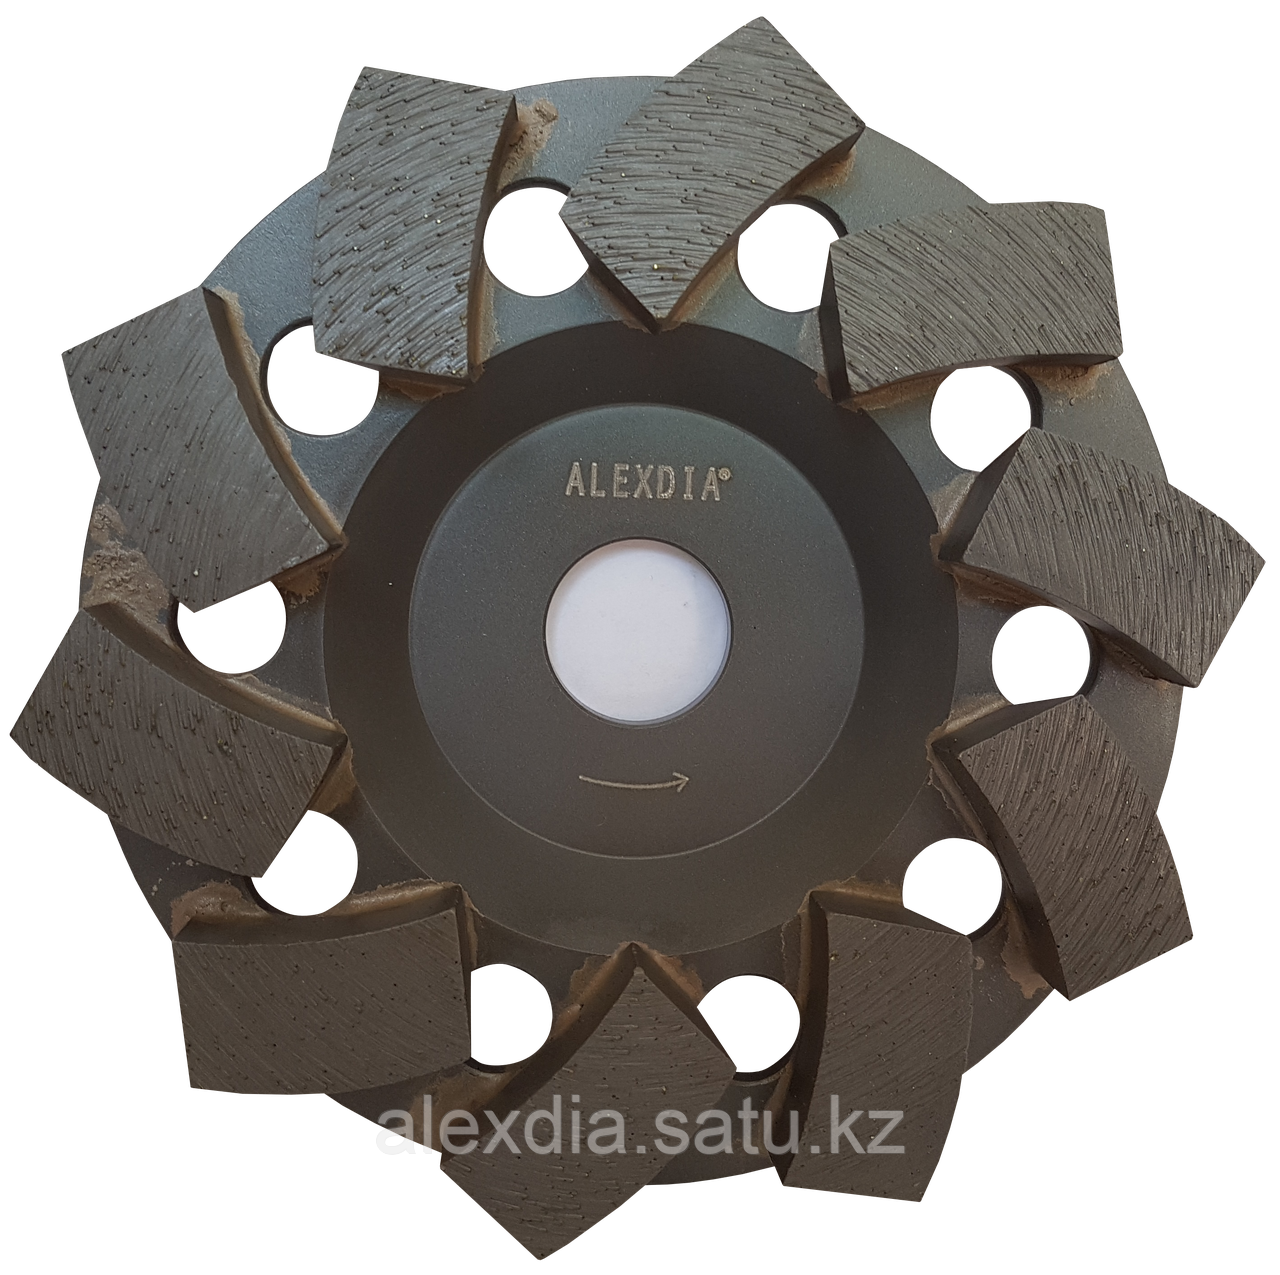 Чашка шлифовальная Tremor 180 мм ALEXDIA